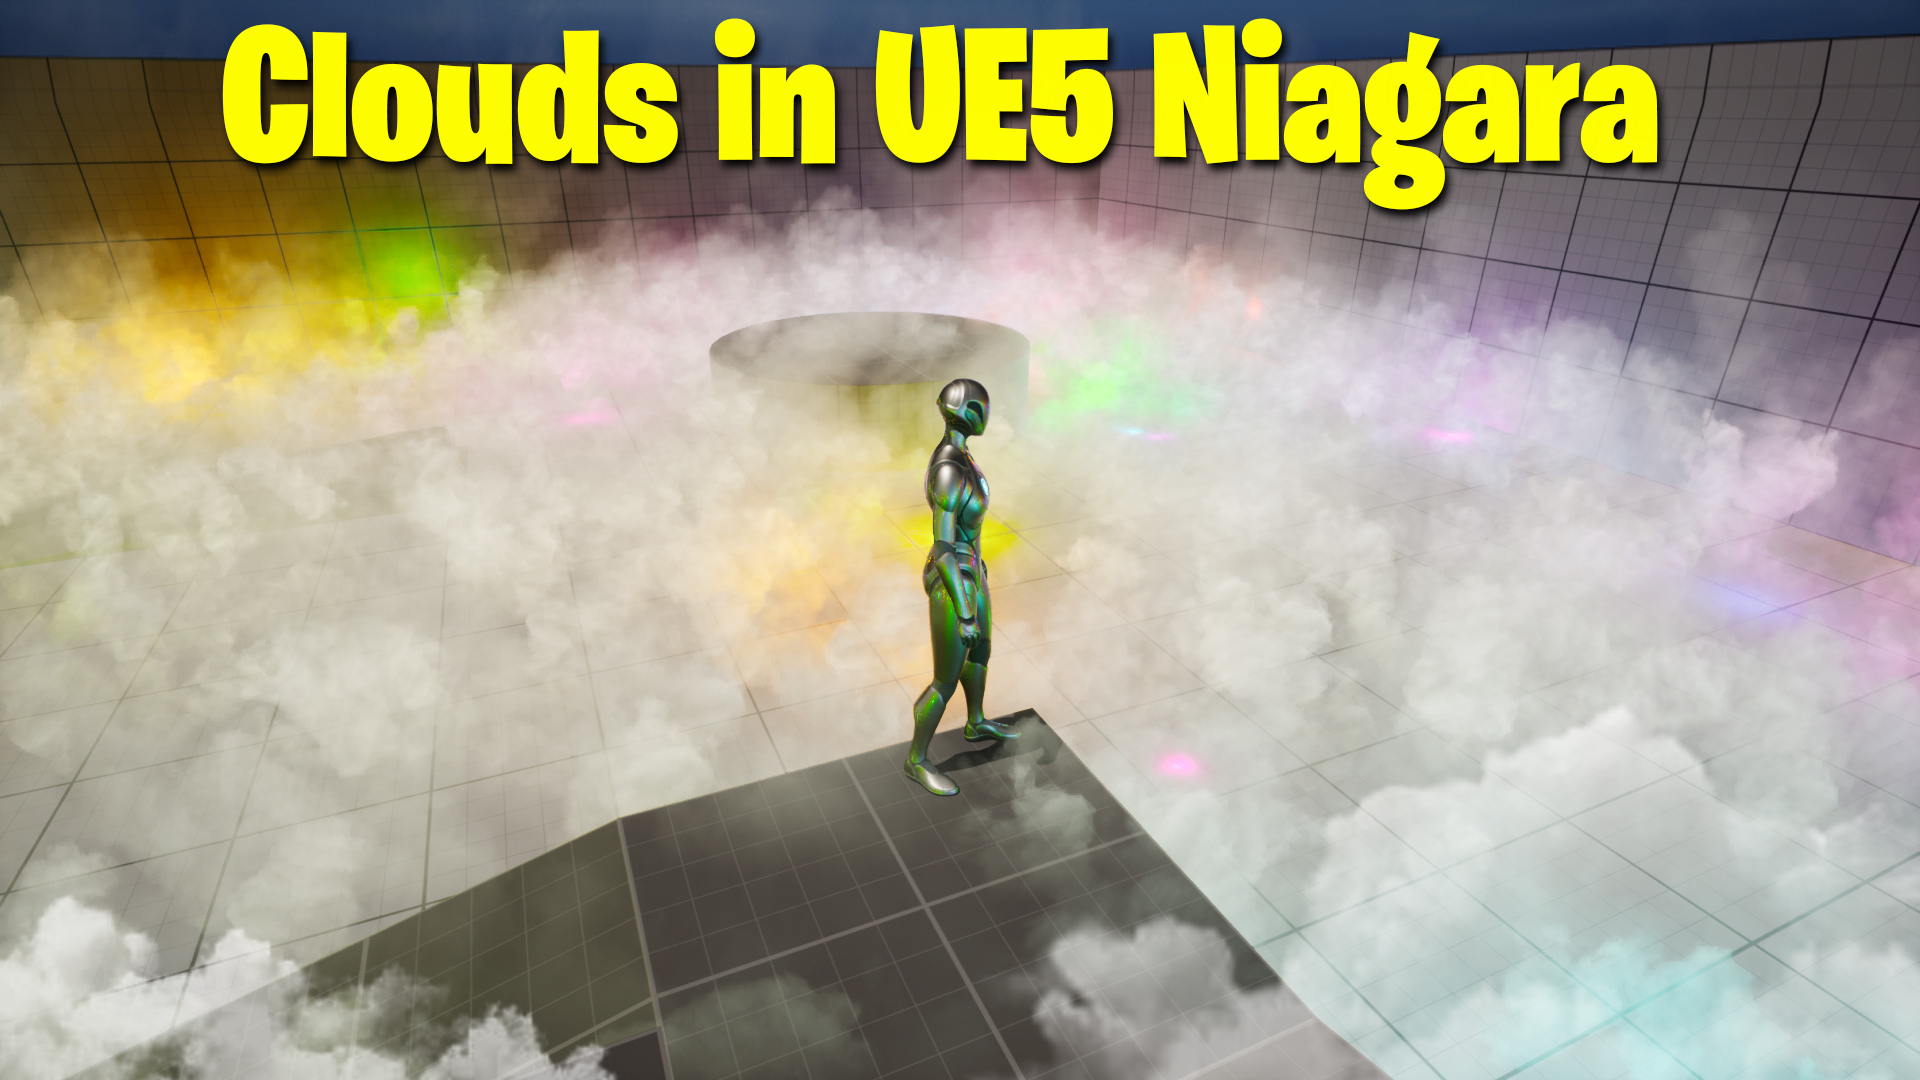 clouds_in_ue5_Niagara.jpg